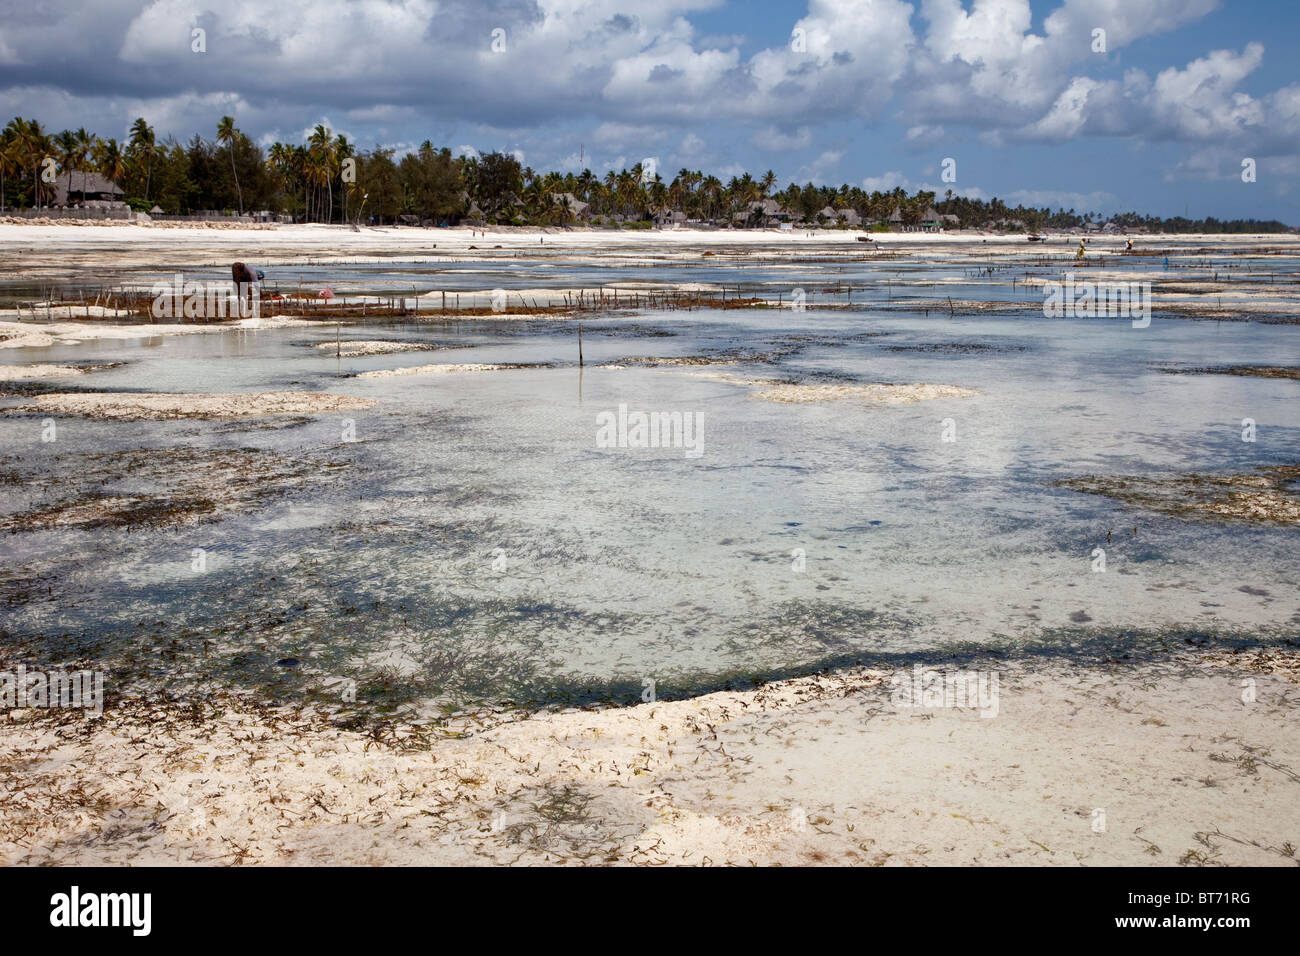 Jambiani, Zanzibar, Tanzanie. Les poteaux des lignes verticale marque d'algues, cultivées par les femmes du village pour gagner un petit montant d'argent. Banque D'Images